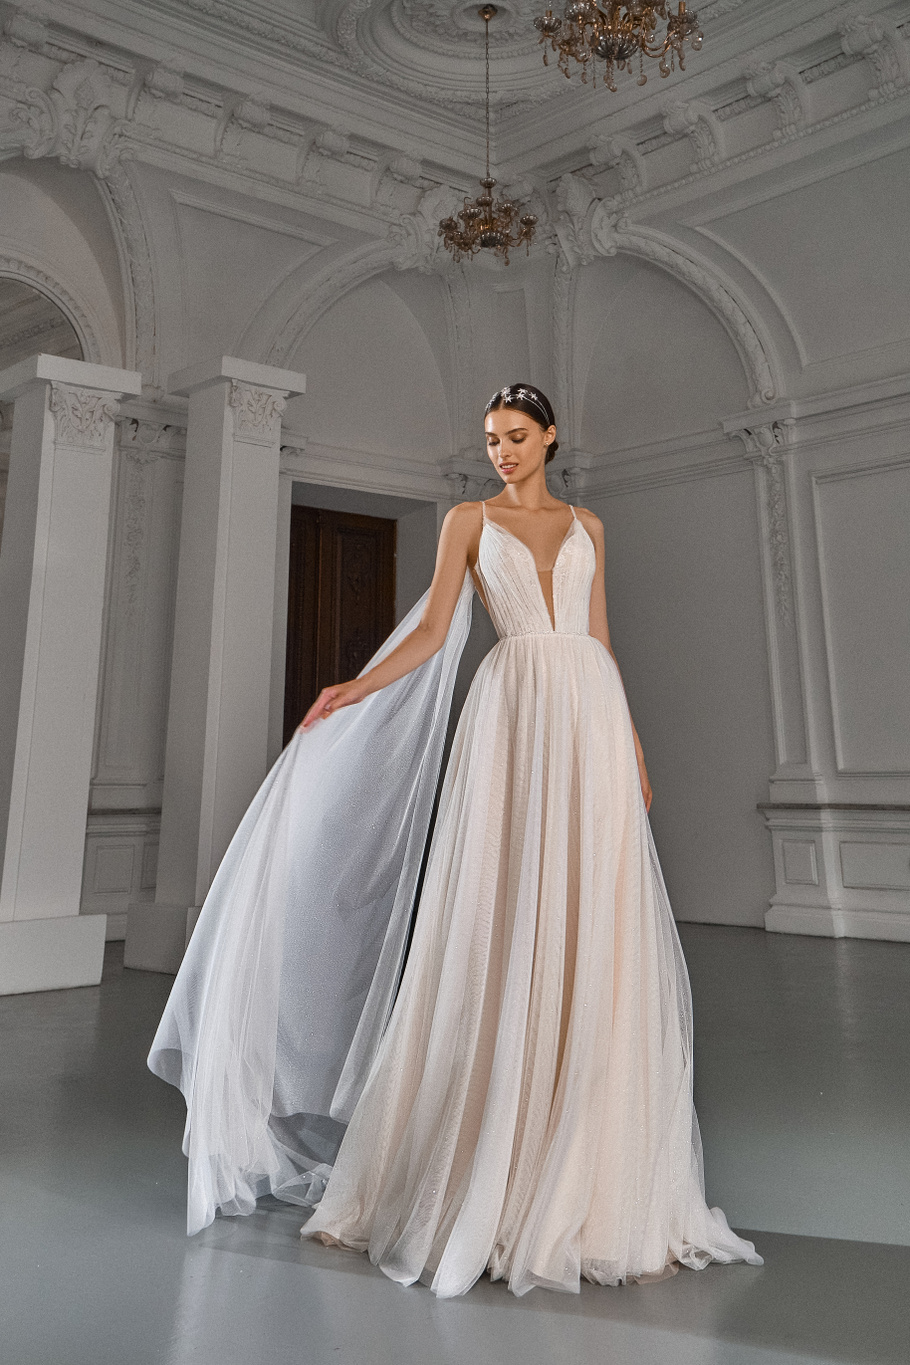 Свадебное платье «Инара» Мэрри Марк — купить в Ярославлье платье Инара из коллекции «Гэлакси» 2021